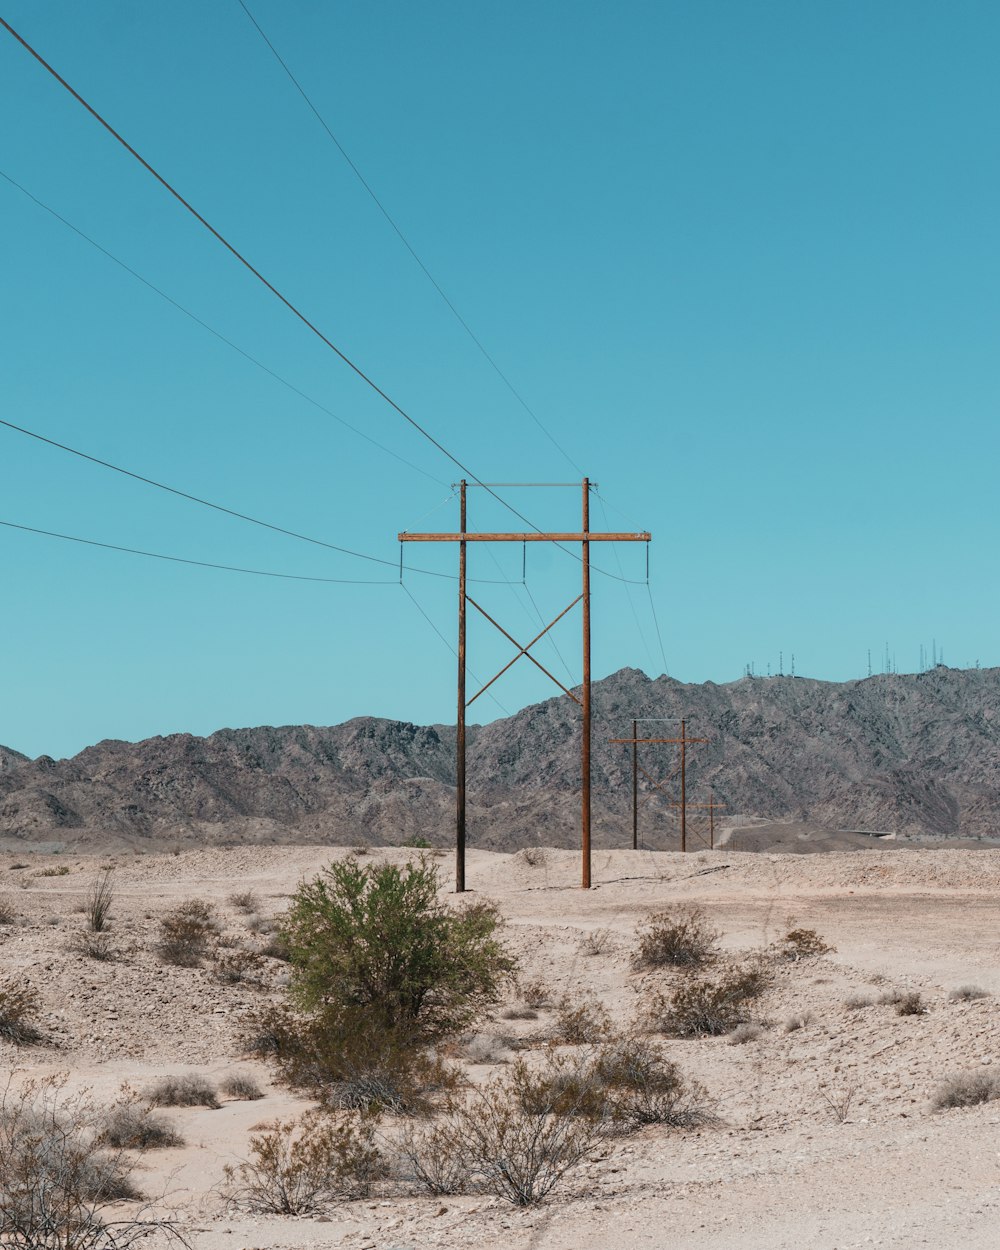 Vista das linhas de cabo na área do deserto